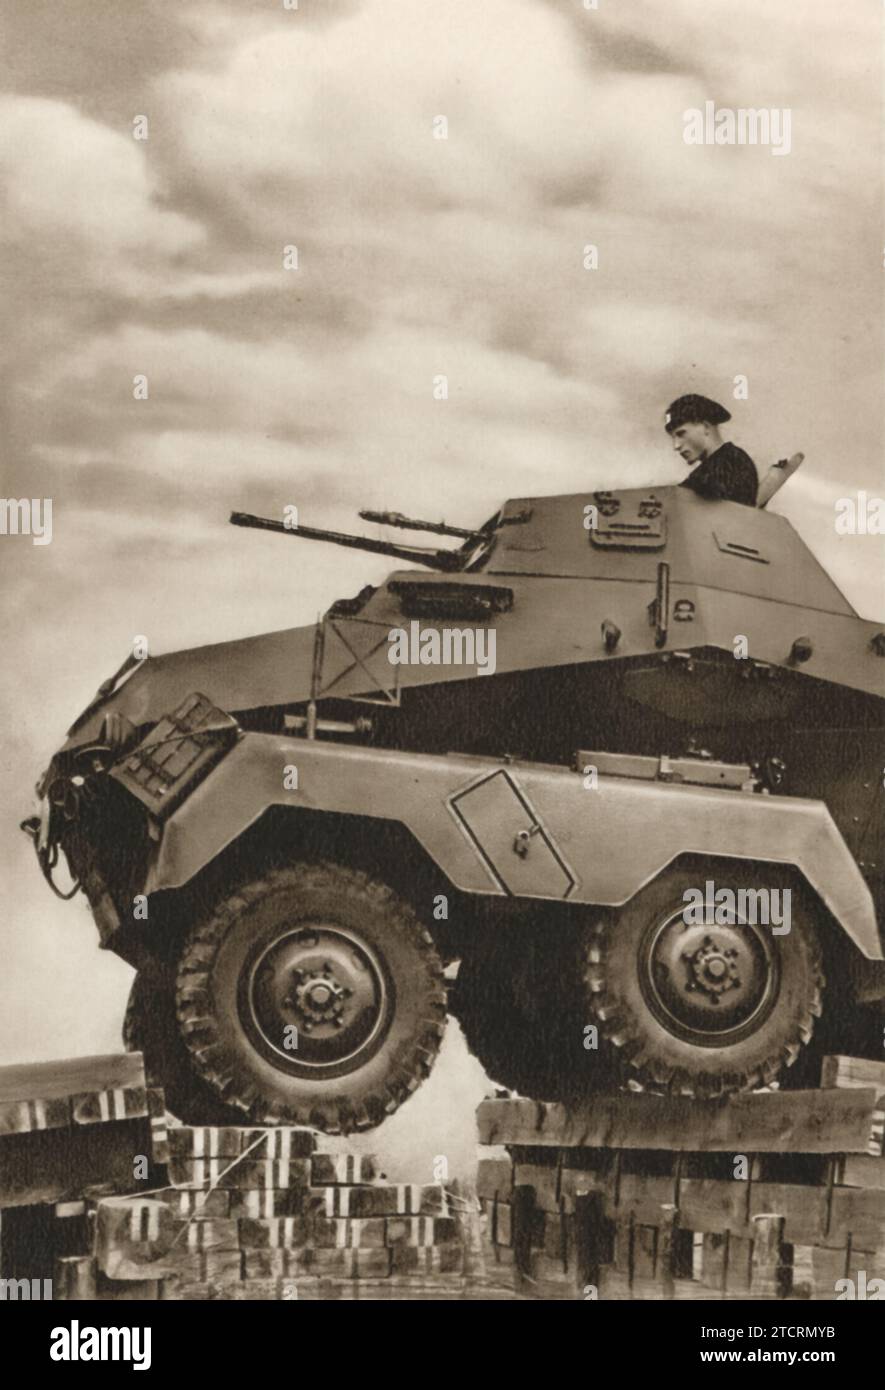 Ein deutsches gepanzertes Fahrzeug, das mühelos eine Barriere überwindet, zeigt die robusten Fähigkeiten dieser Fahrzeuge während des Zweiten Weltkriegs Der Soldat, der das Fahrzeug bedient, ist in der oberen Luke sichtbar, eine Position, die sowohl Sicht als auch Kontrolle bietet. Stockfoto